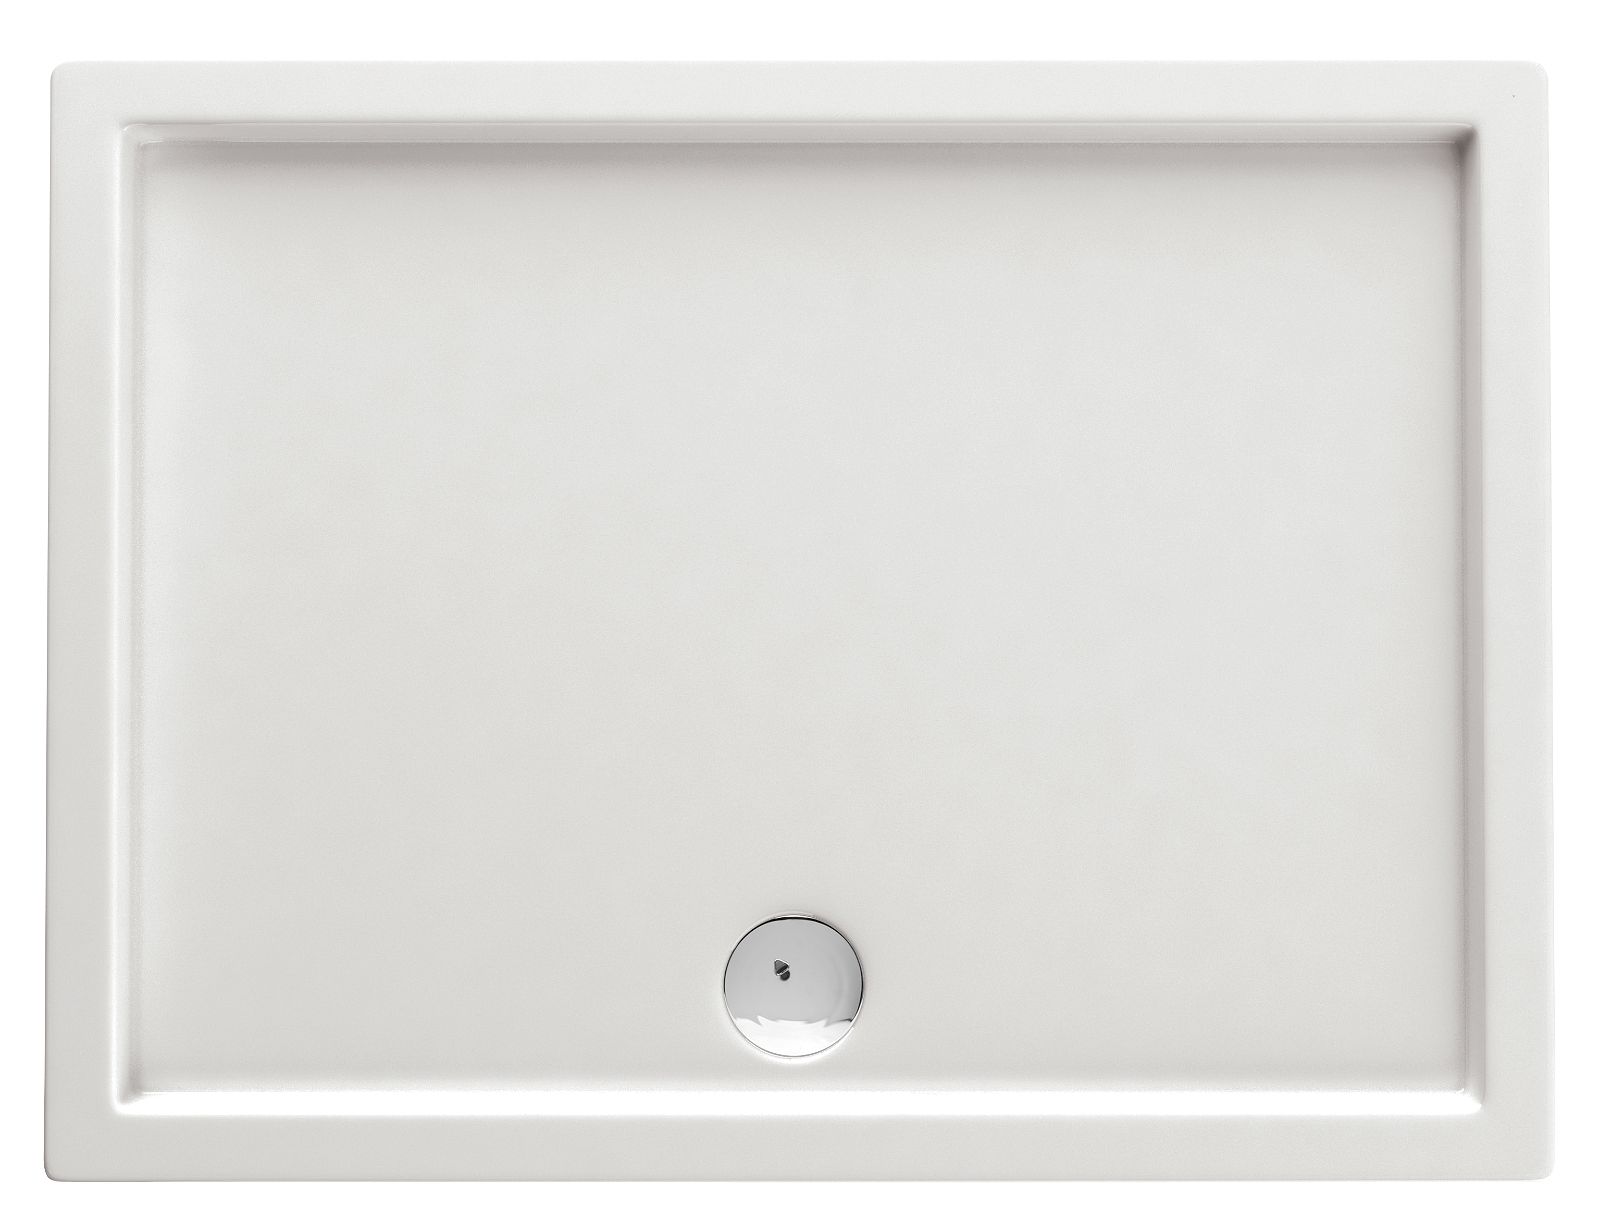 Acrylic shower tray, rectangular, 100x80 cm - KTN_046B - Główne zdjęcie produktowe